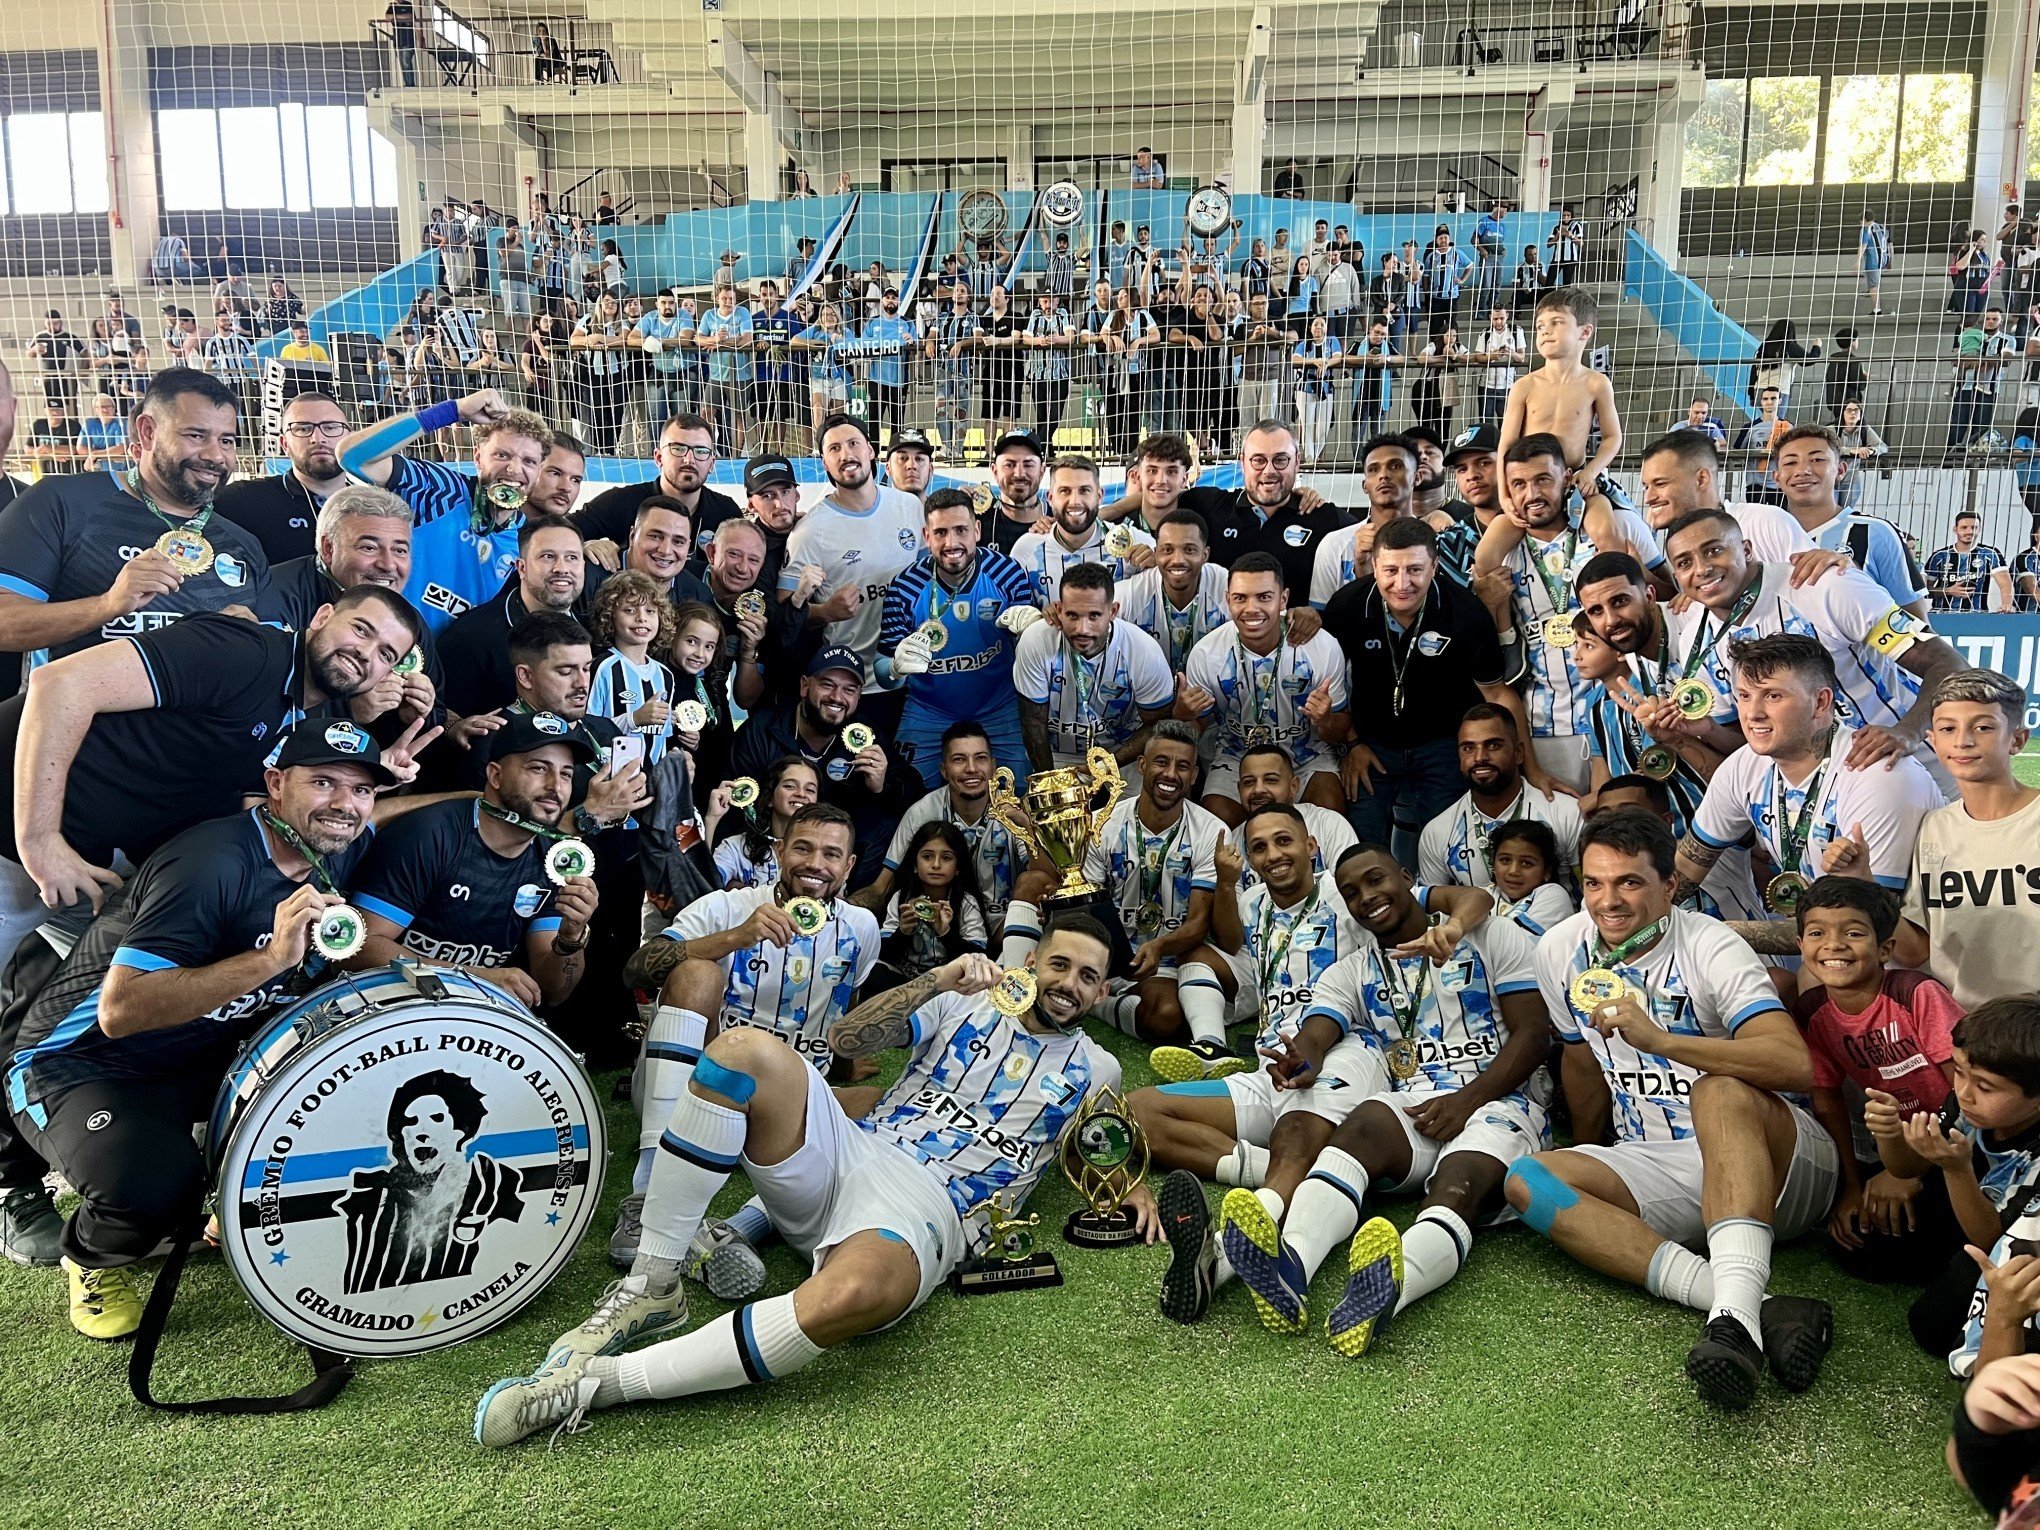 Grêmio Fut 7 se desvincula de liga nacional e torneio em Gramado